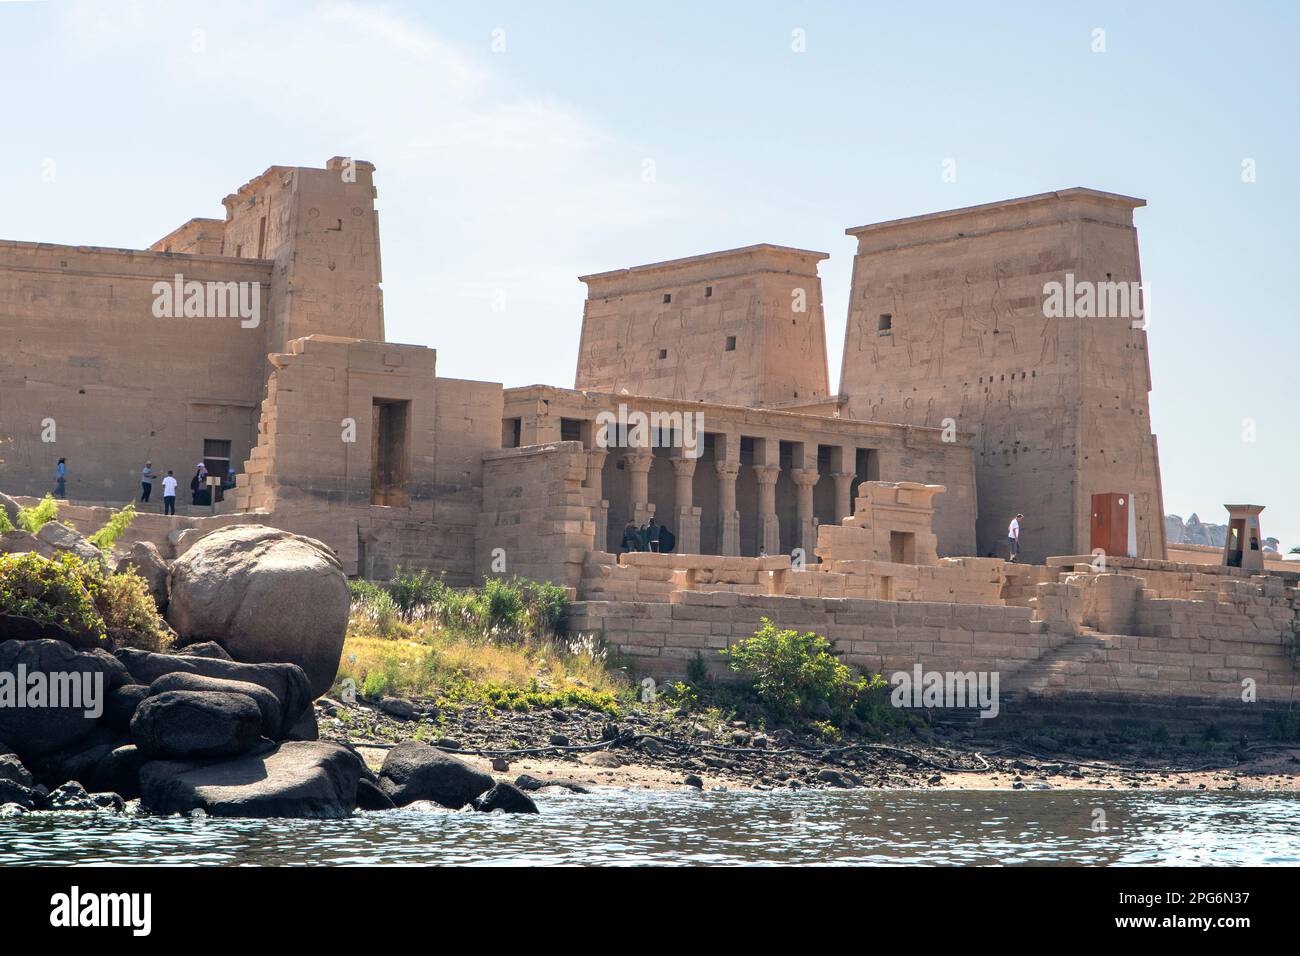 Temple de Philae, près d'Assouan, Égypte Banque D'Images